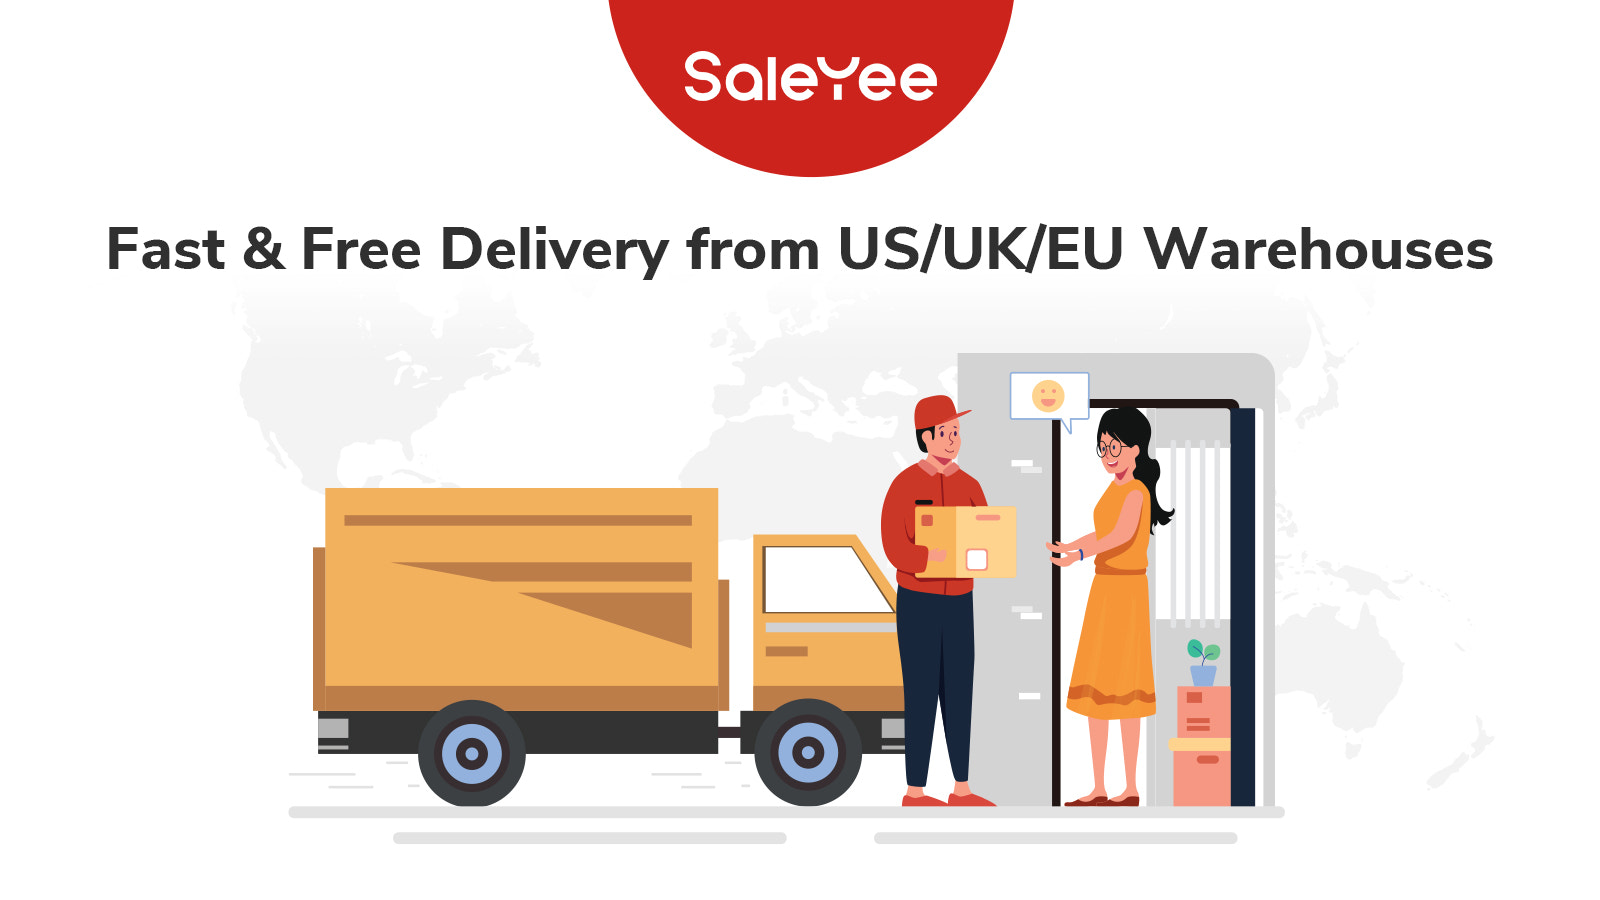 saleyee-bietet-schnelle-und-kostenlose-lieferung